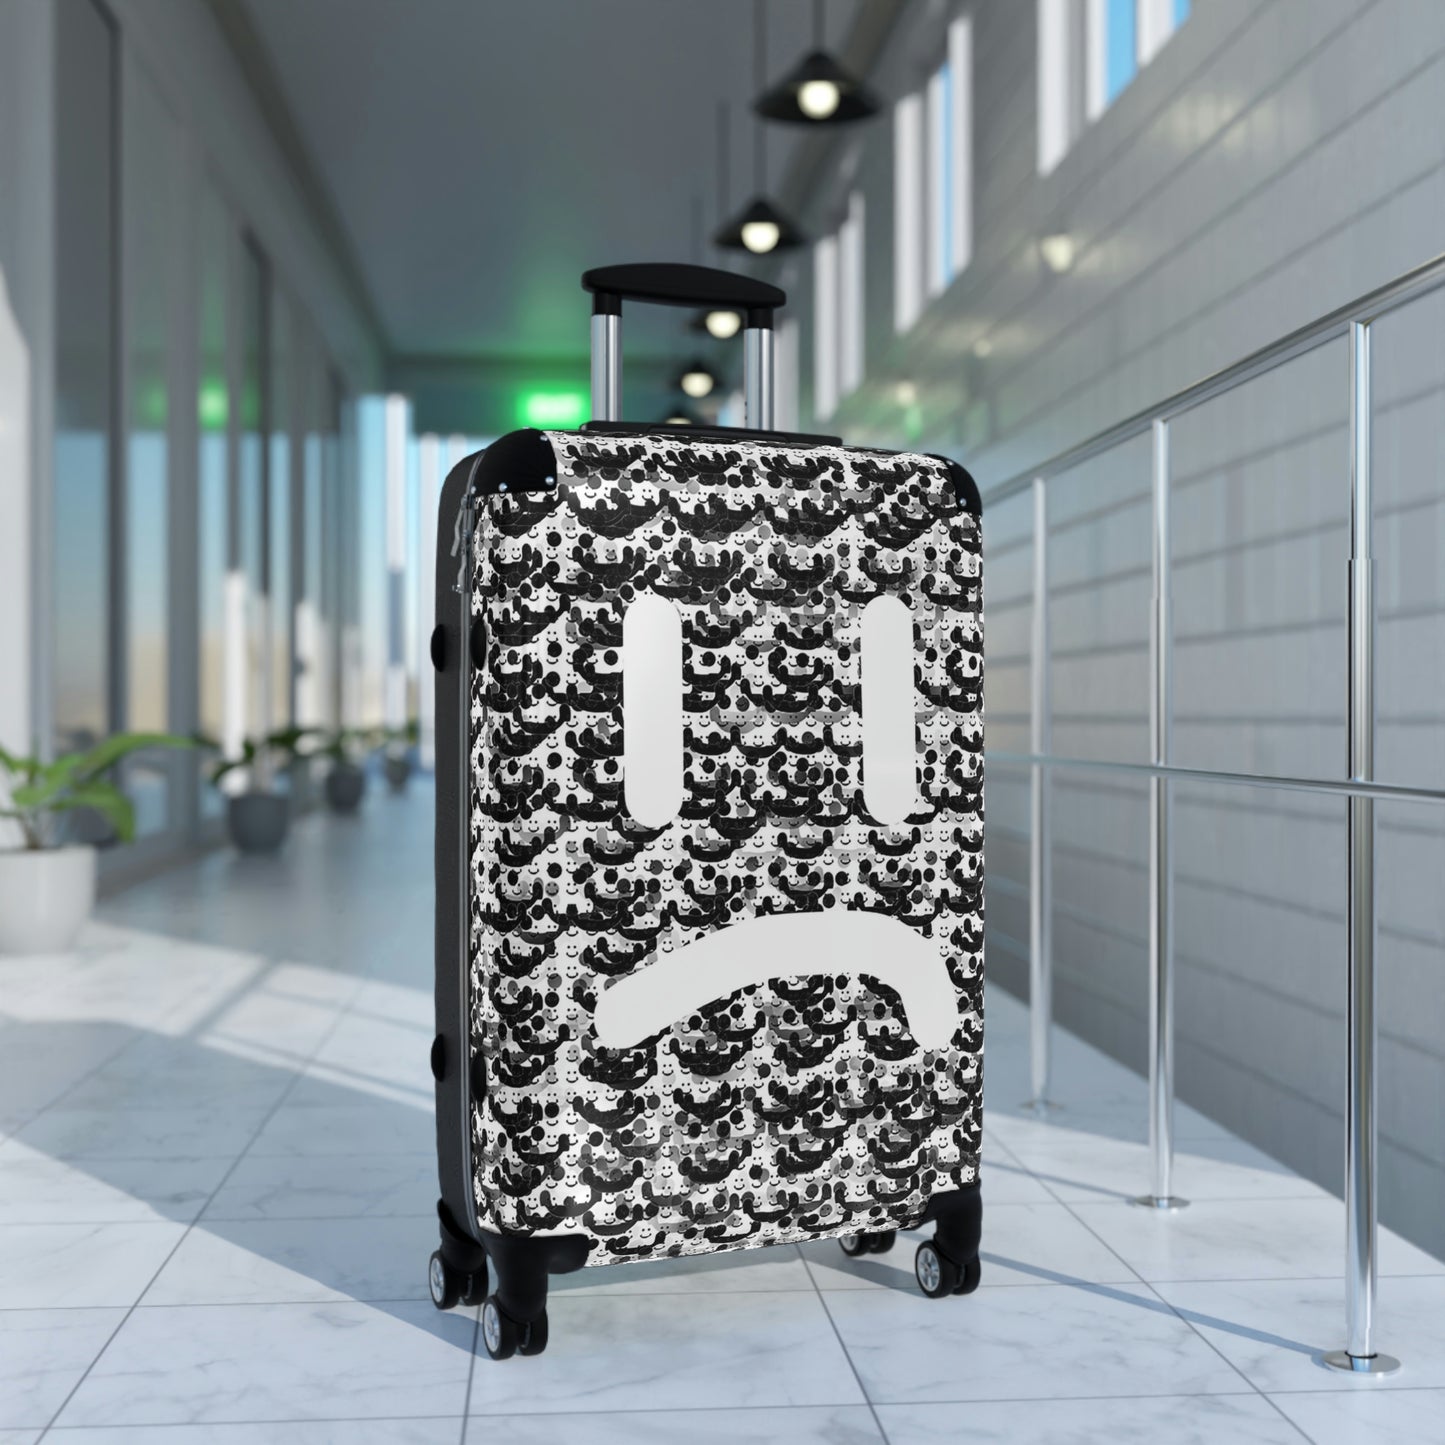 You Should Smile More, Travel Unique Suitcase